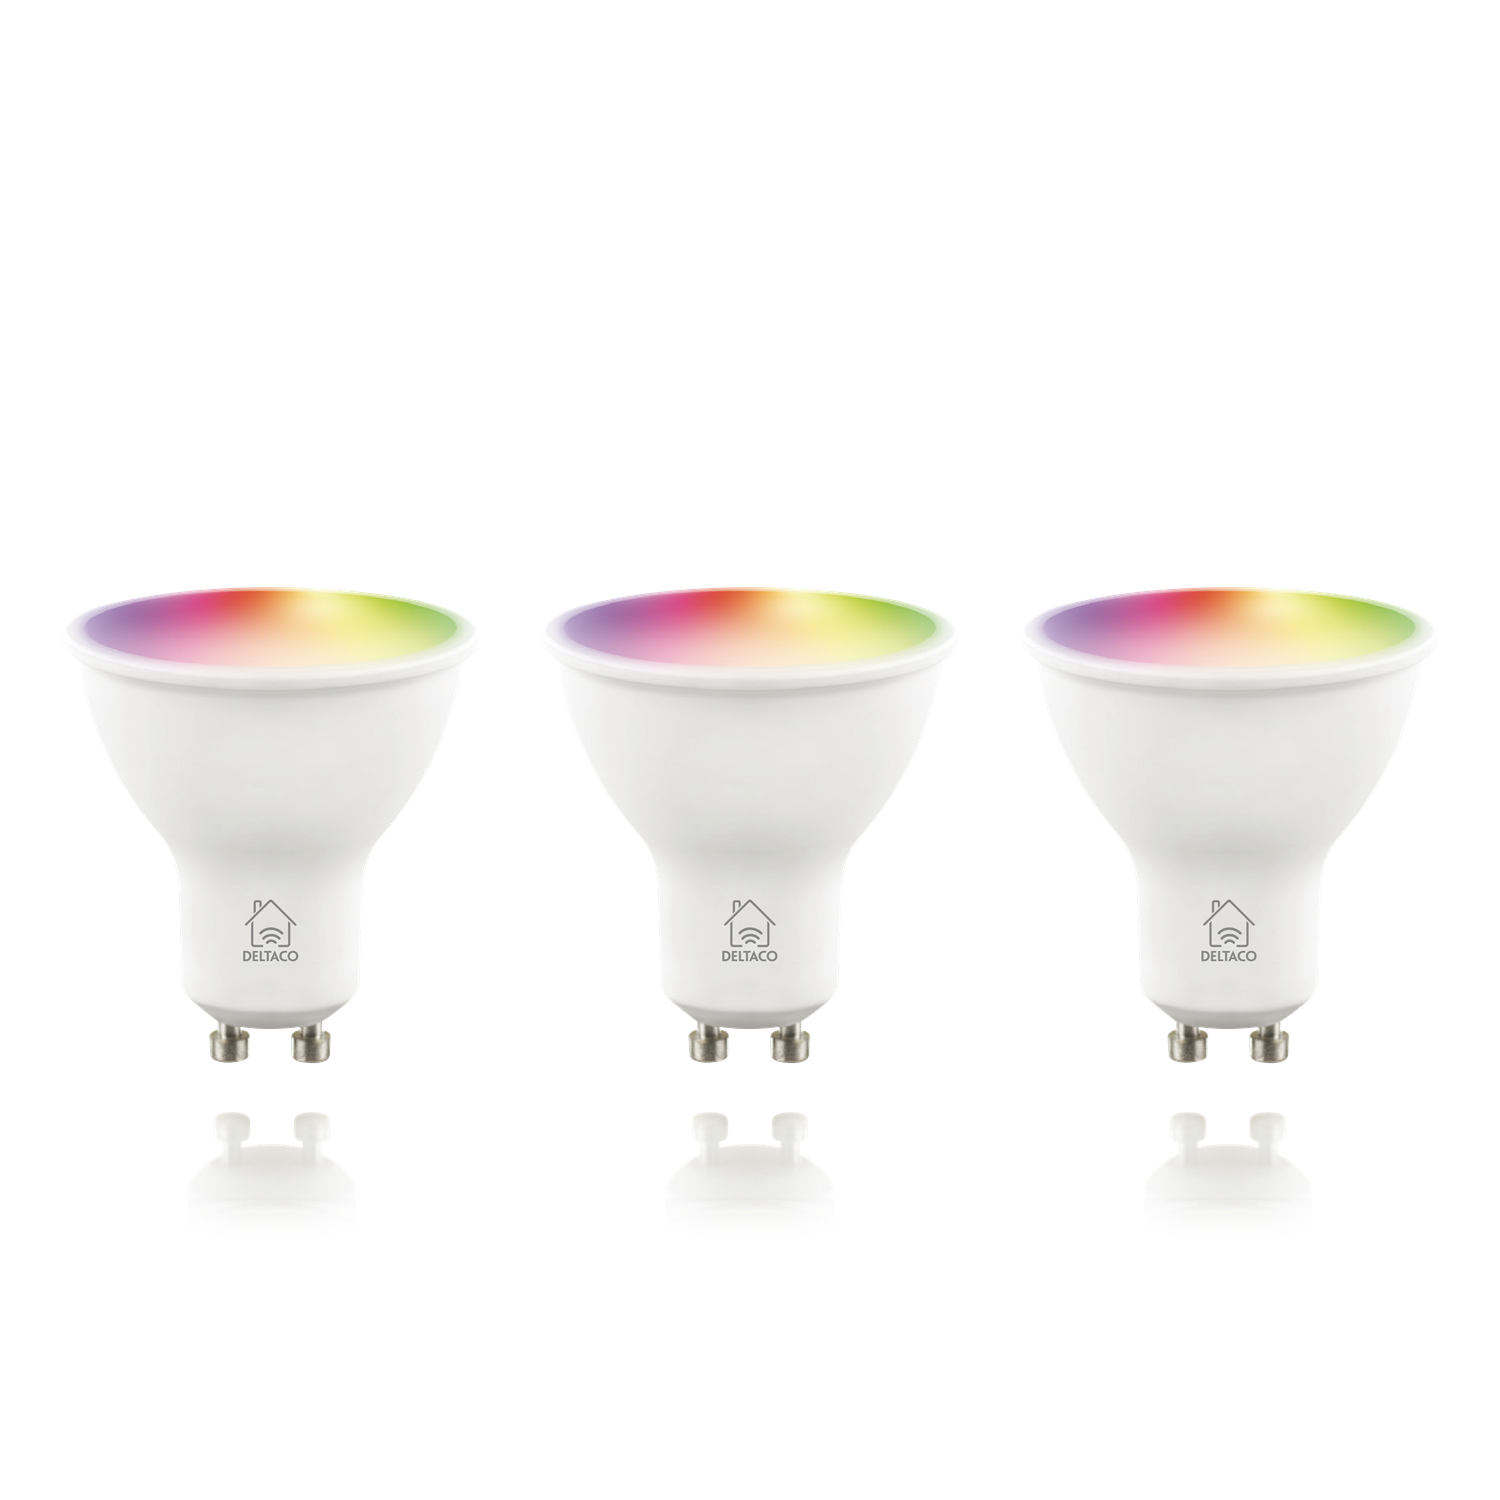 HOME DELTACO warmweiß, Glühbirne GU10 Smarter SMART smart RGB Spot